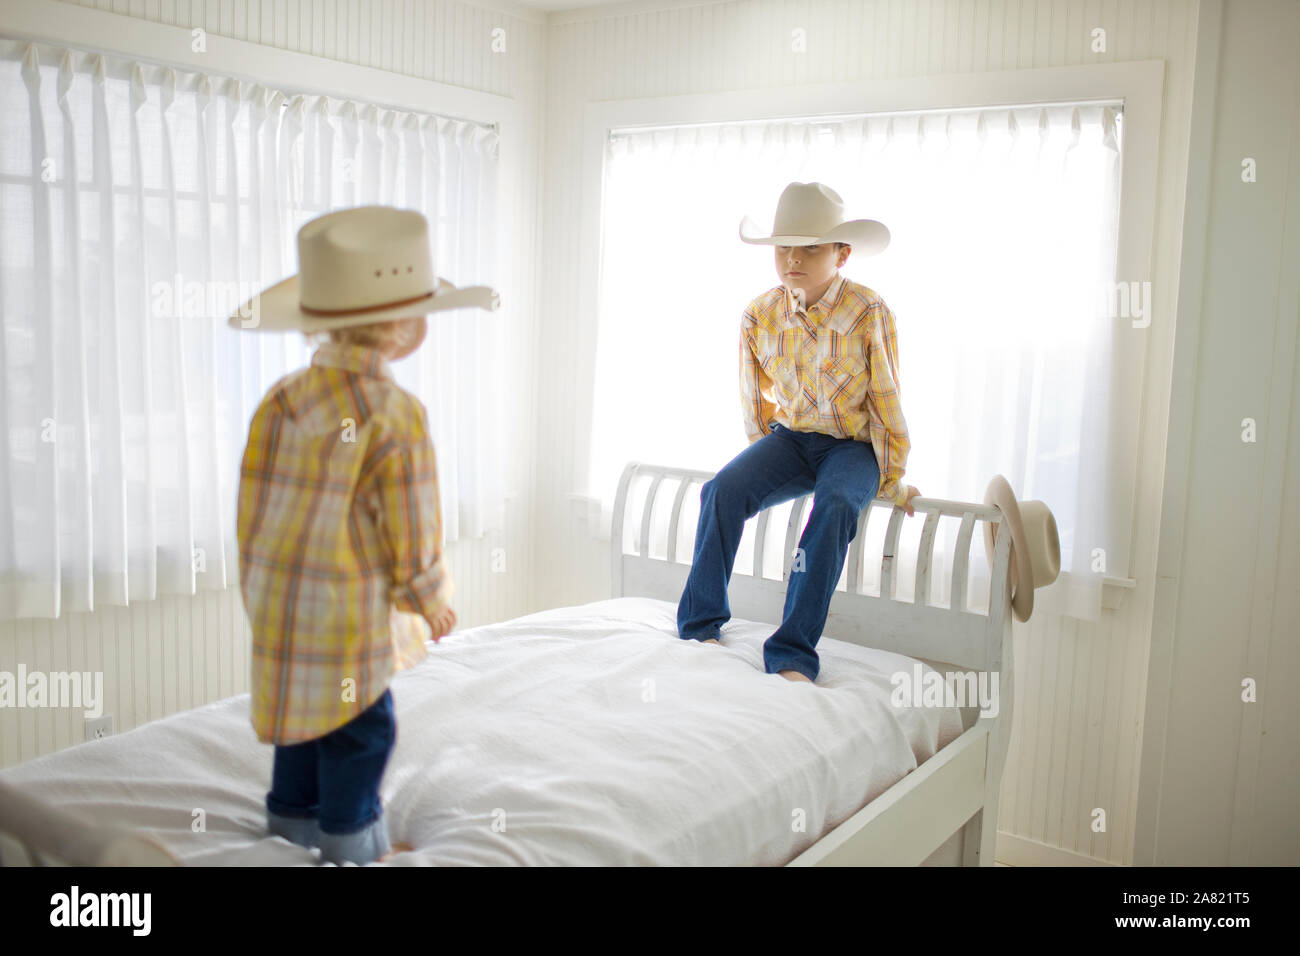 Die beiden jungen Bruder tragen Cowboyhüte, stehend auf einem Bett aus Holz in einem sonnigen weißen Raum. Stockfoto